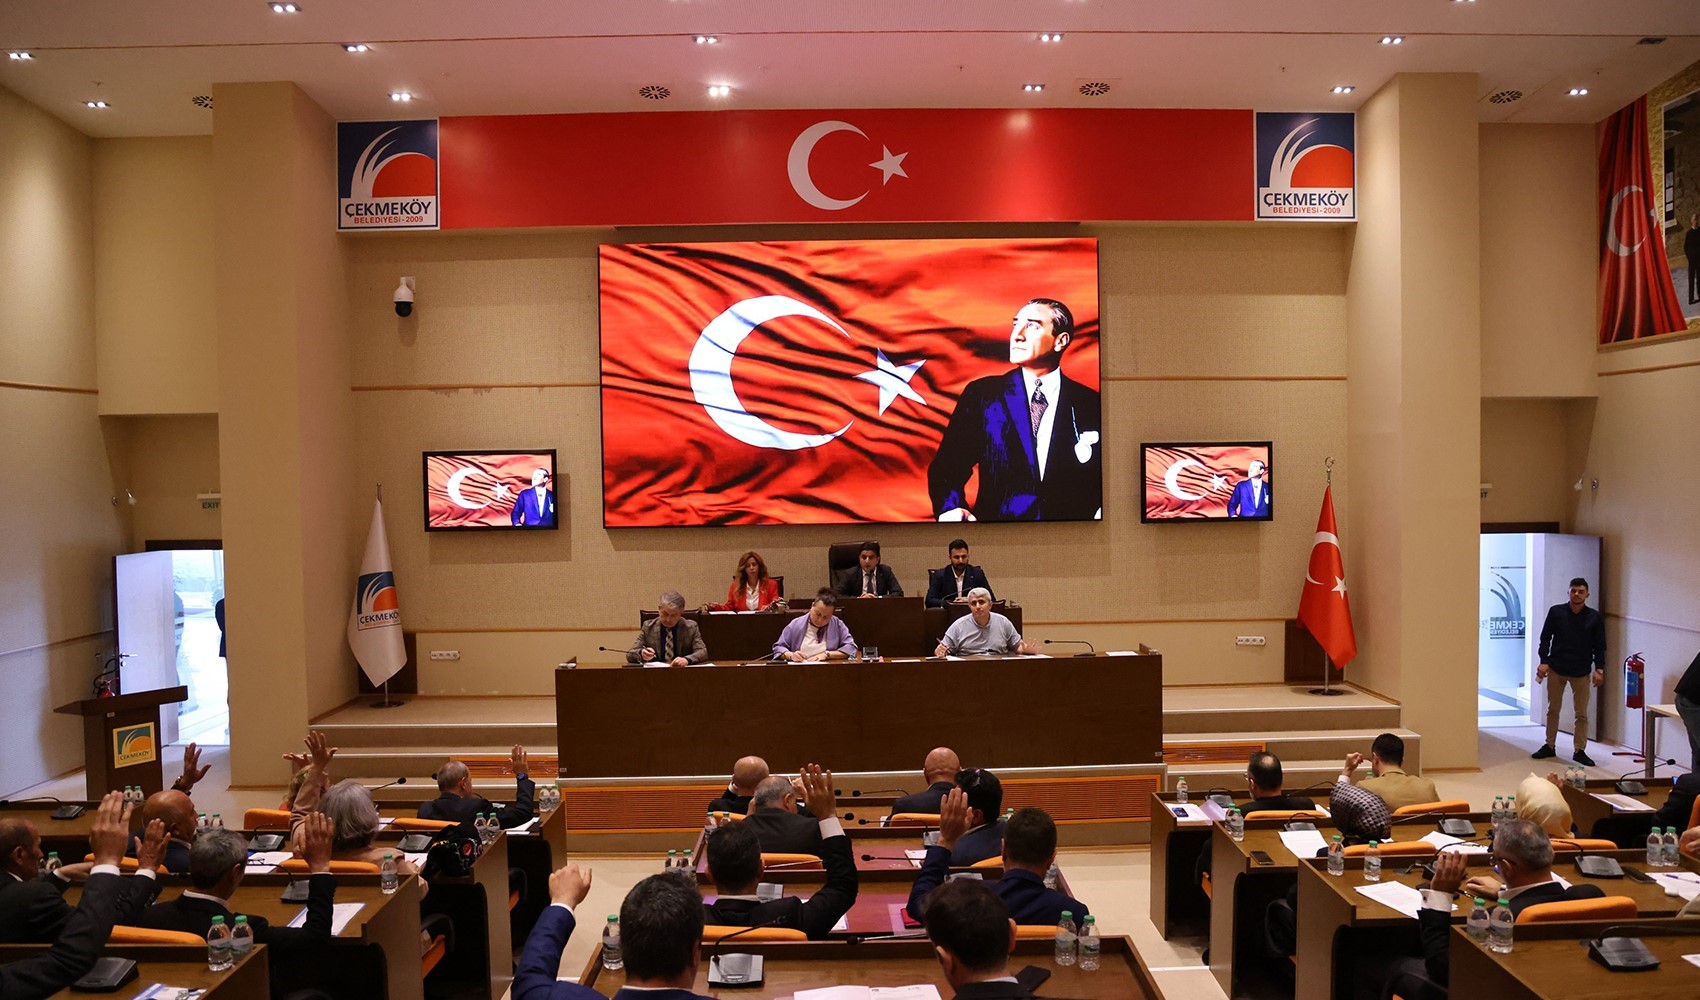 Üç vakıfa üzücü haber: CHP belediyesinde imzalanmış protokoller feshedildi